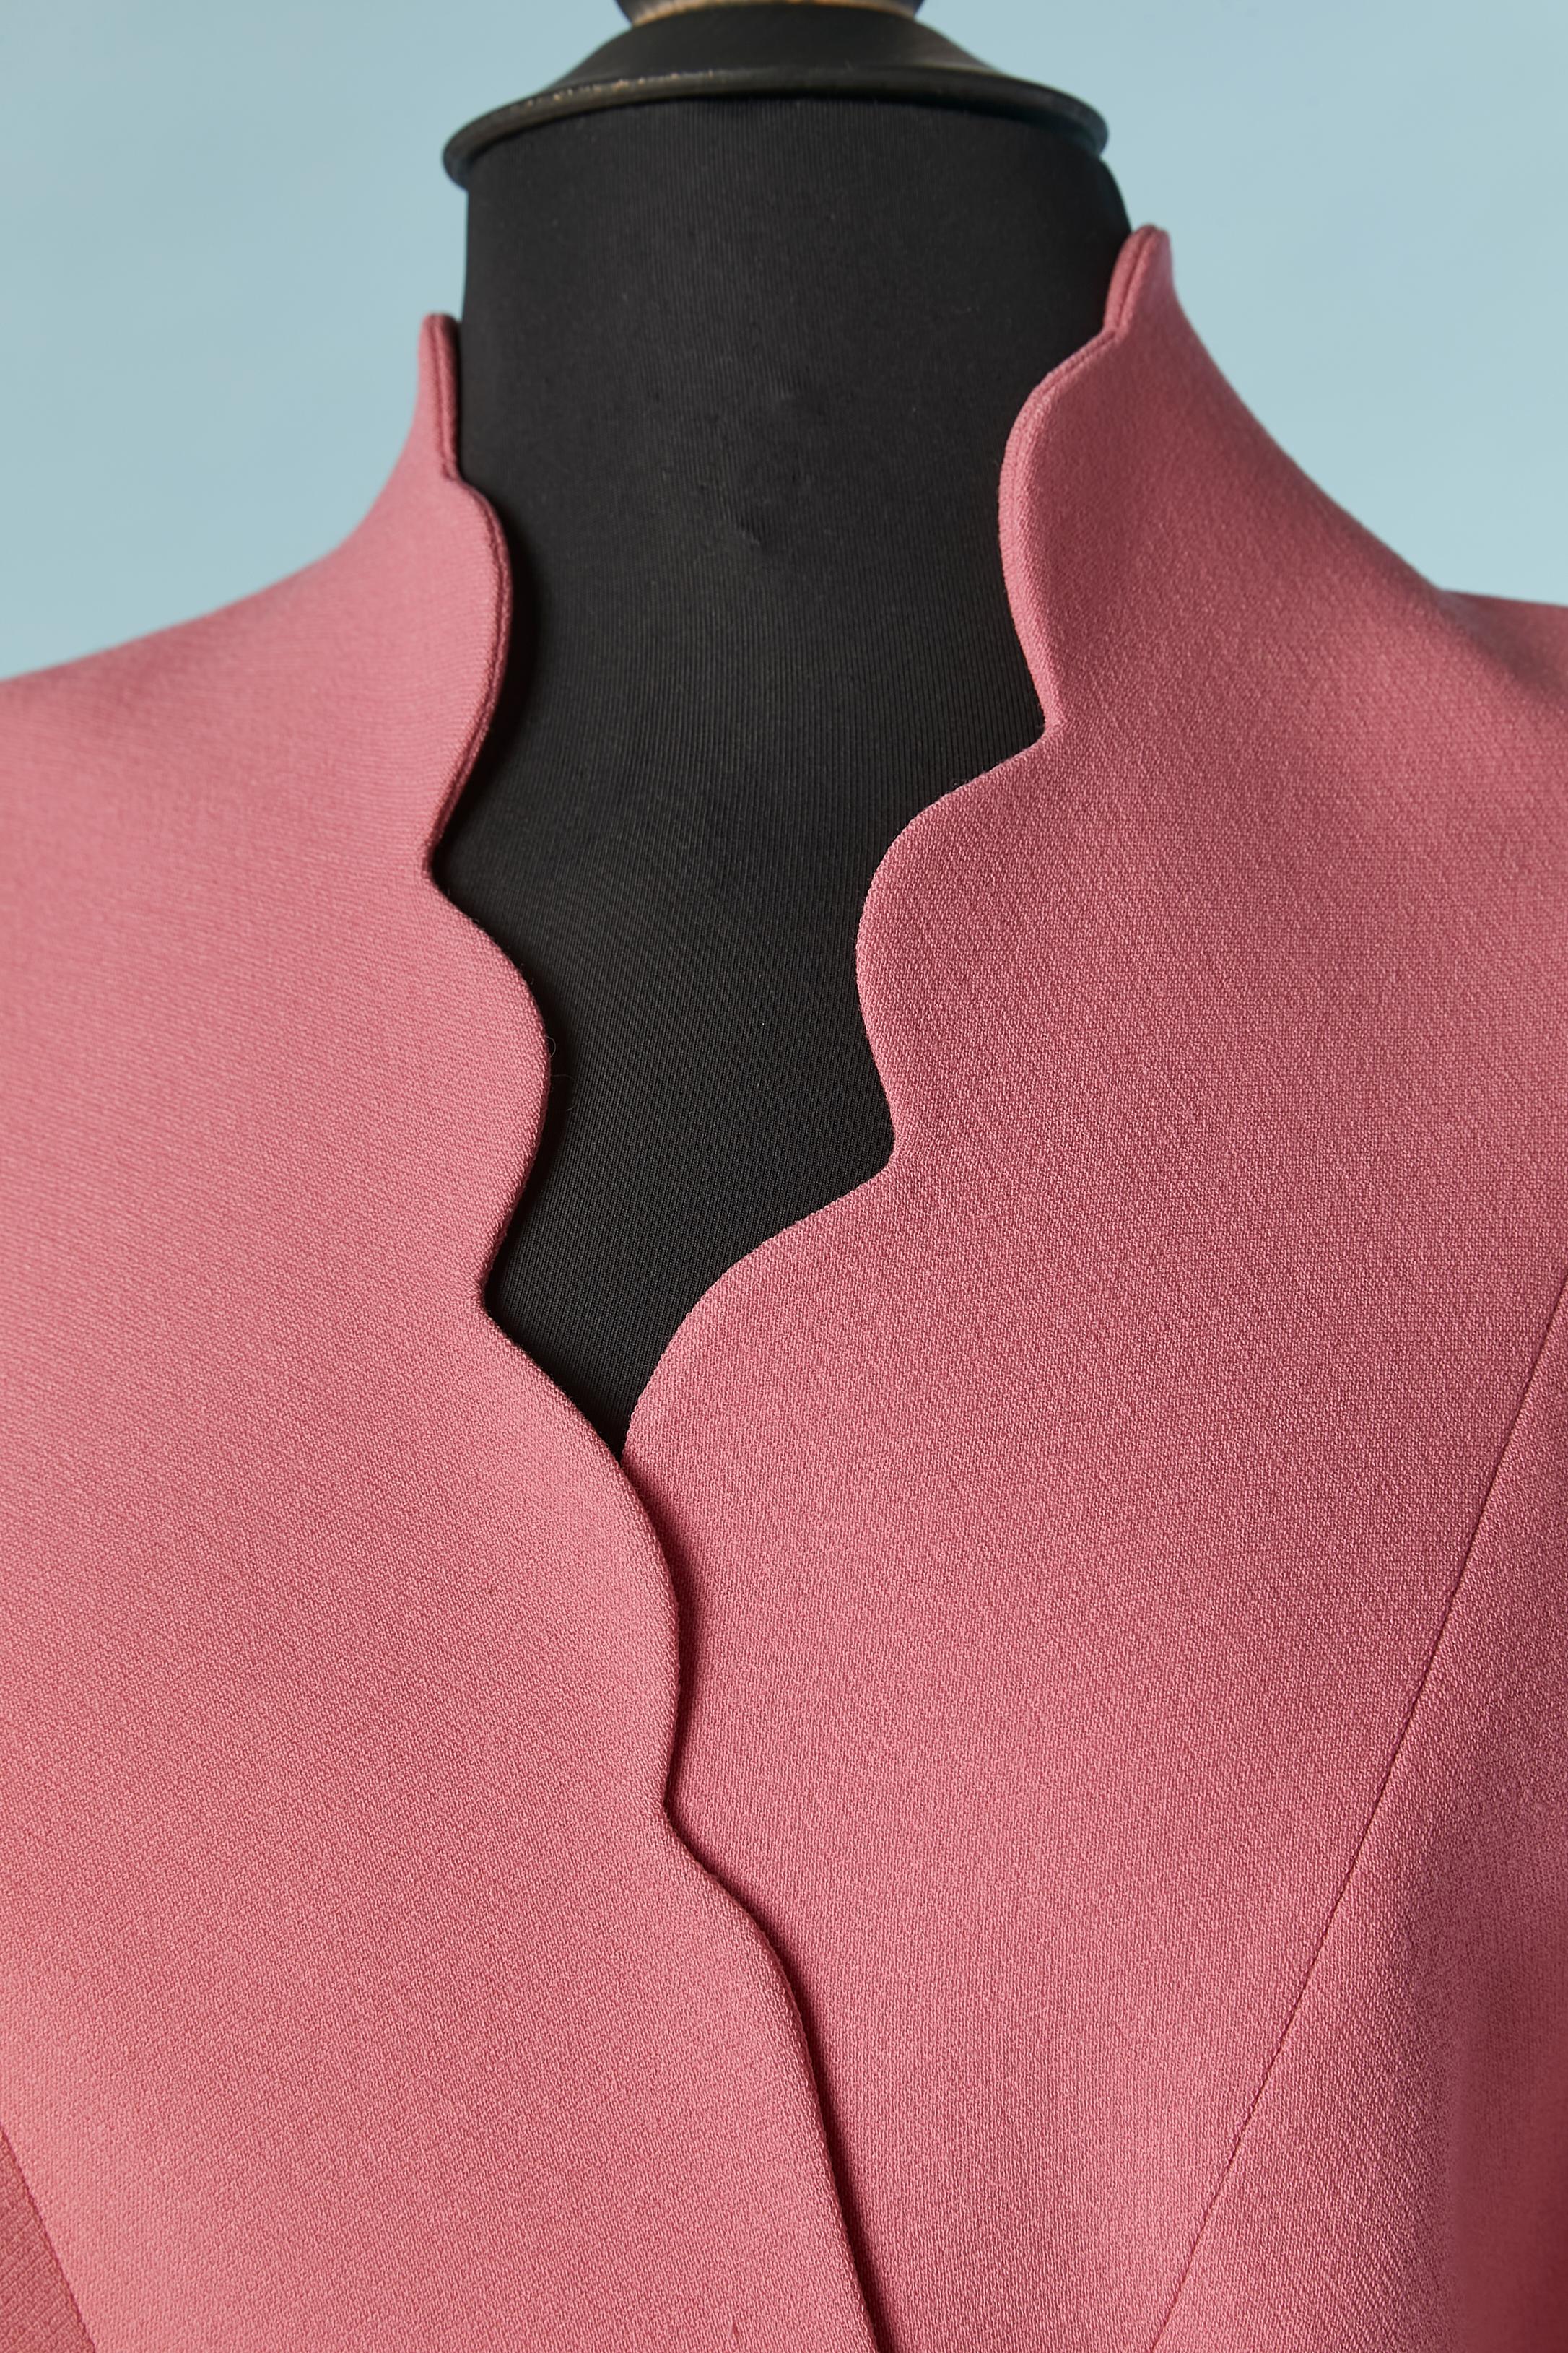 Veste asymétrique enveloppée de laine rose avec boucle rose. Doublure en acétate. Pad d'épaule. Bouton et boutonnière à l'intérieur pour maintenir le devant de la veste enveloppé. 
Longueur totale du côté droit = 54 cm 
Longueur totale du côté